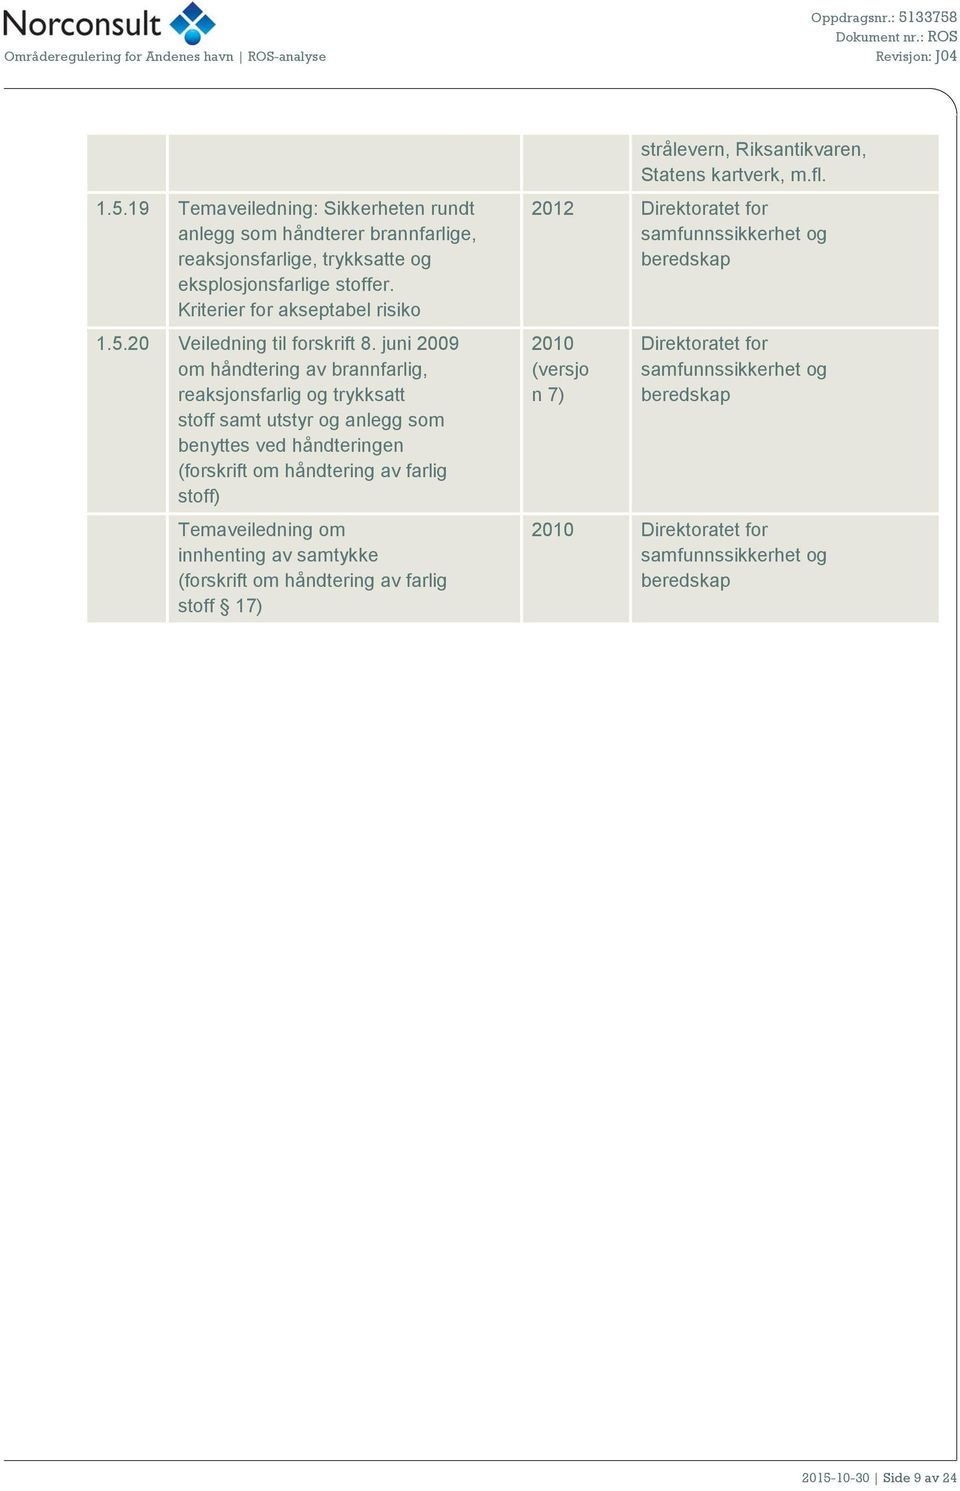 Temaveiledning om innhenting av samtykke (forskrift om håndtering av farlig stoff 17) strålevern, Riksantikvaren, Statens kartverk, m.fl.